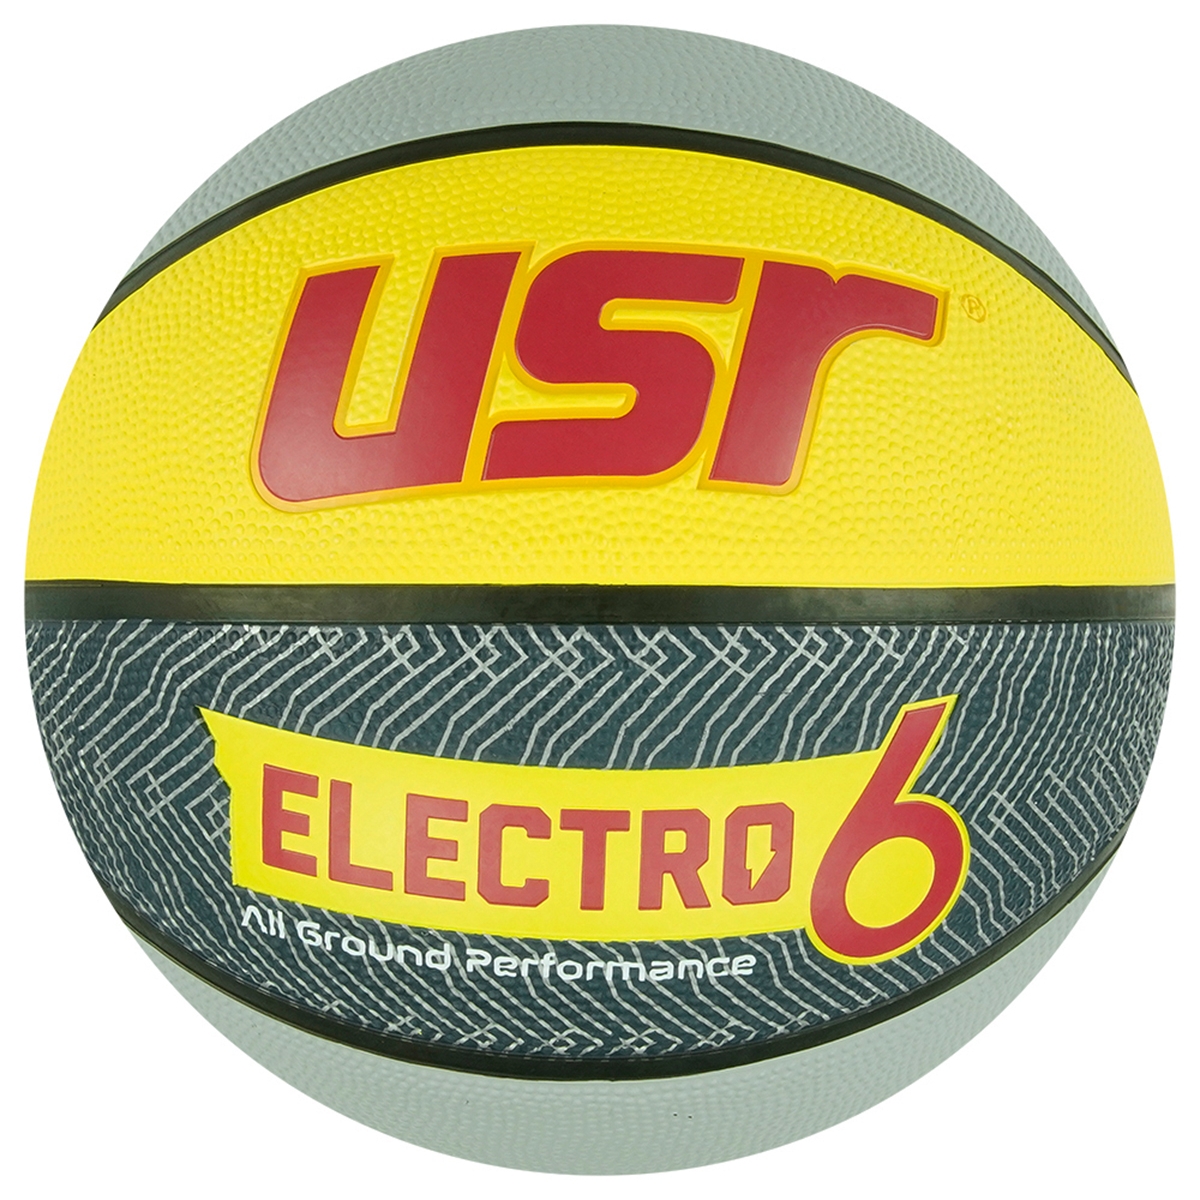 Electro6.2 Kauçuk 6 No Basketbol Topu